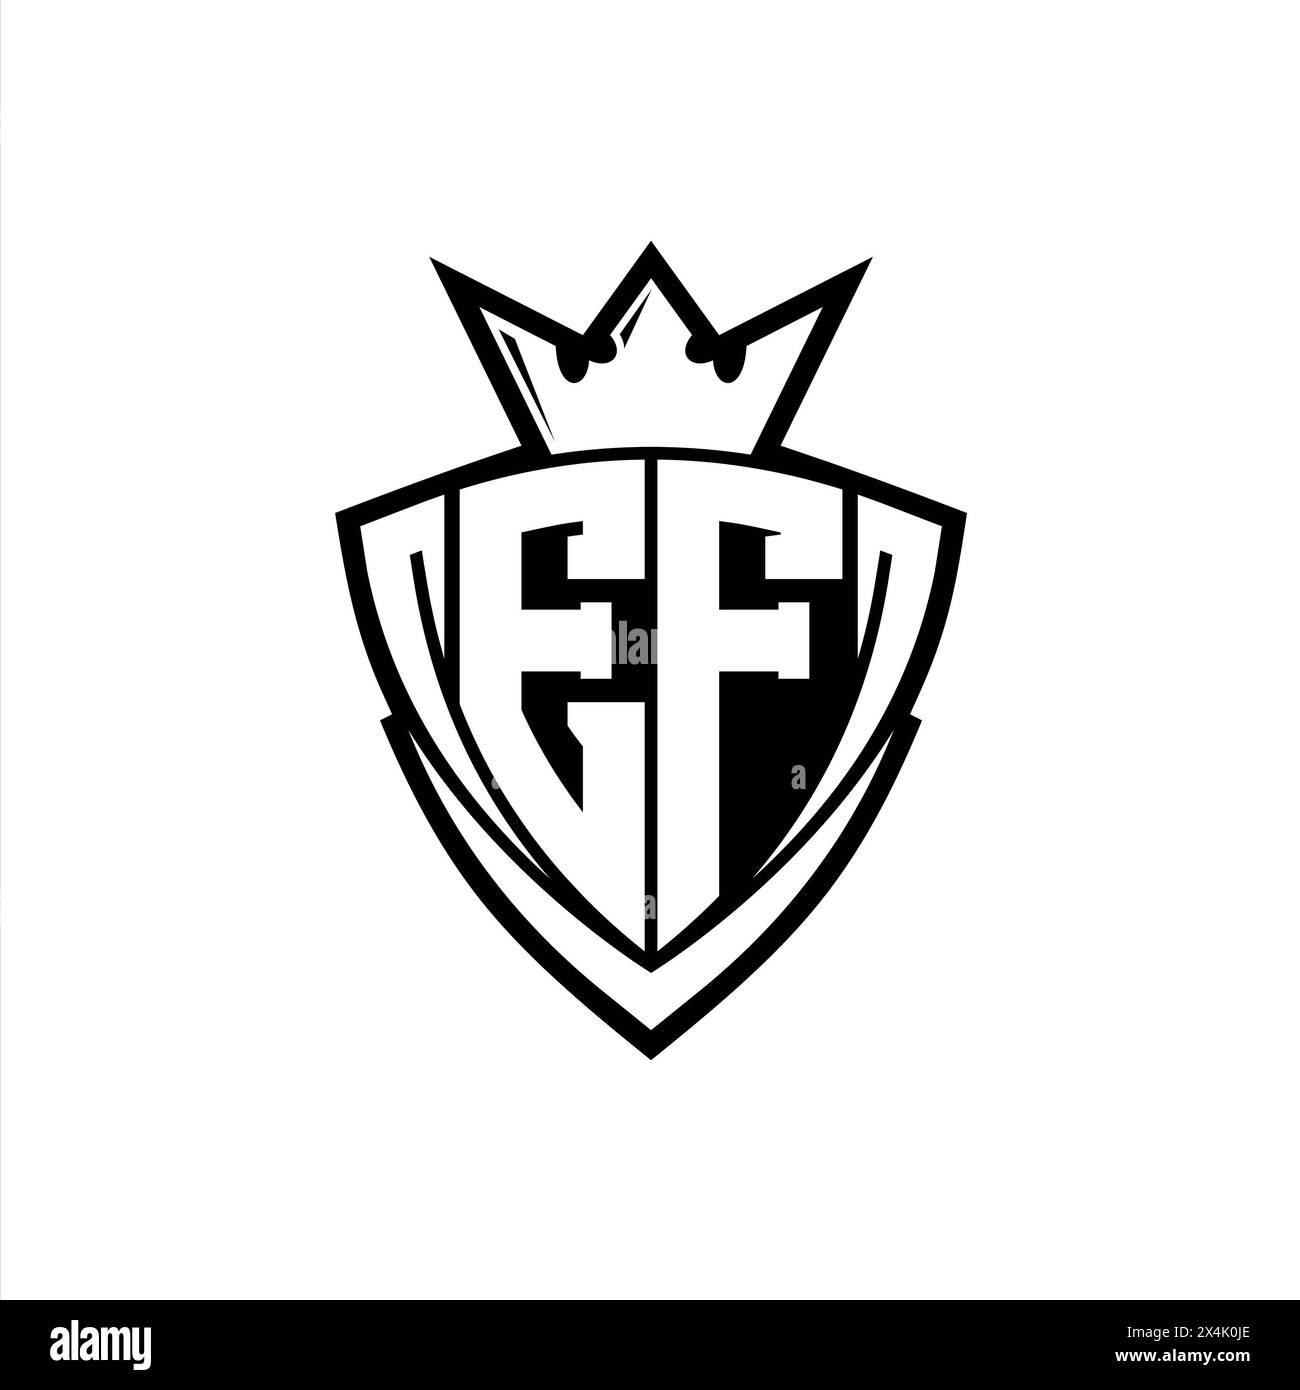 EF Fett Letter Logo mit scharfer dreieckiger Schildform mit Krone innen weißer Umrandung auf weißem Hintergrund Stockfoto